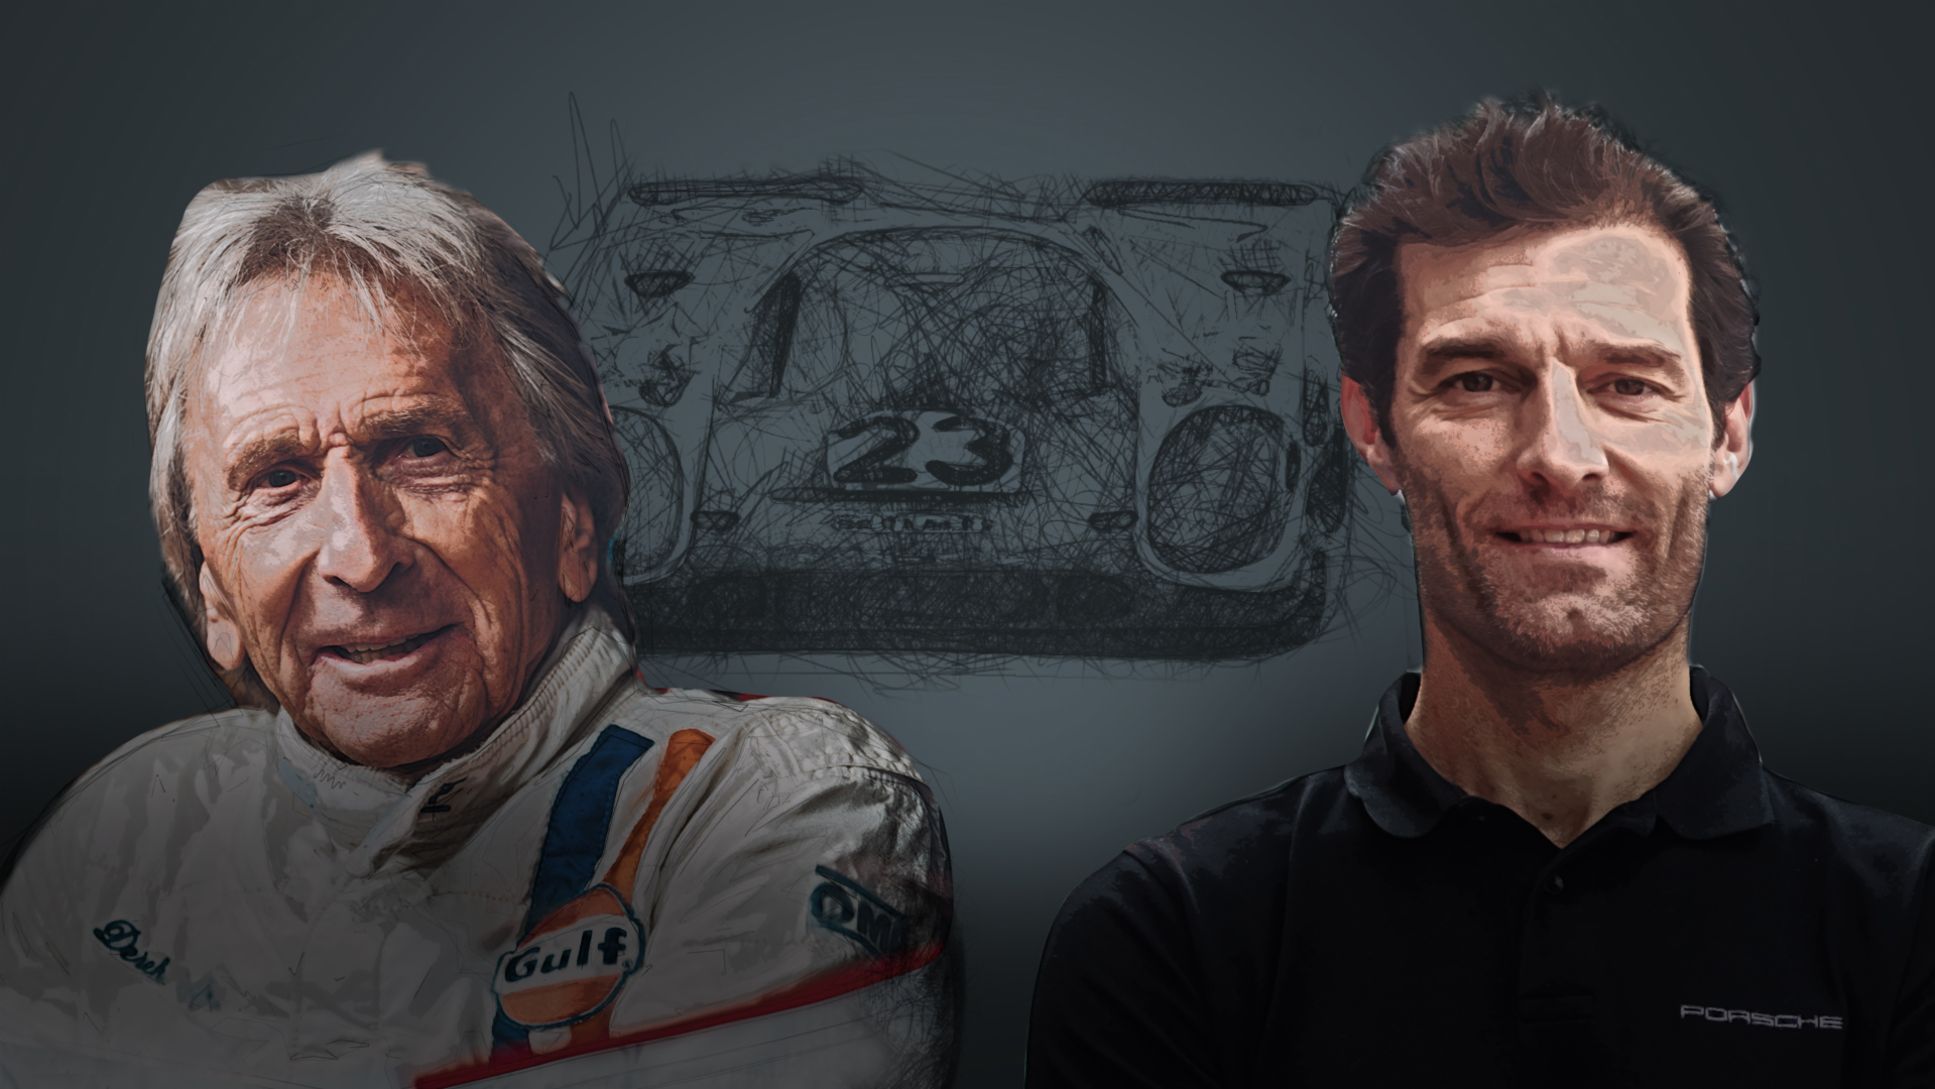 Derek Bell, Mark Webber (i-d), 2020, Porsche AG